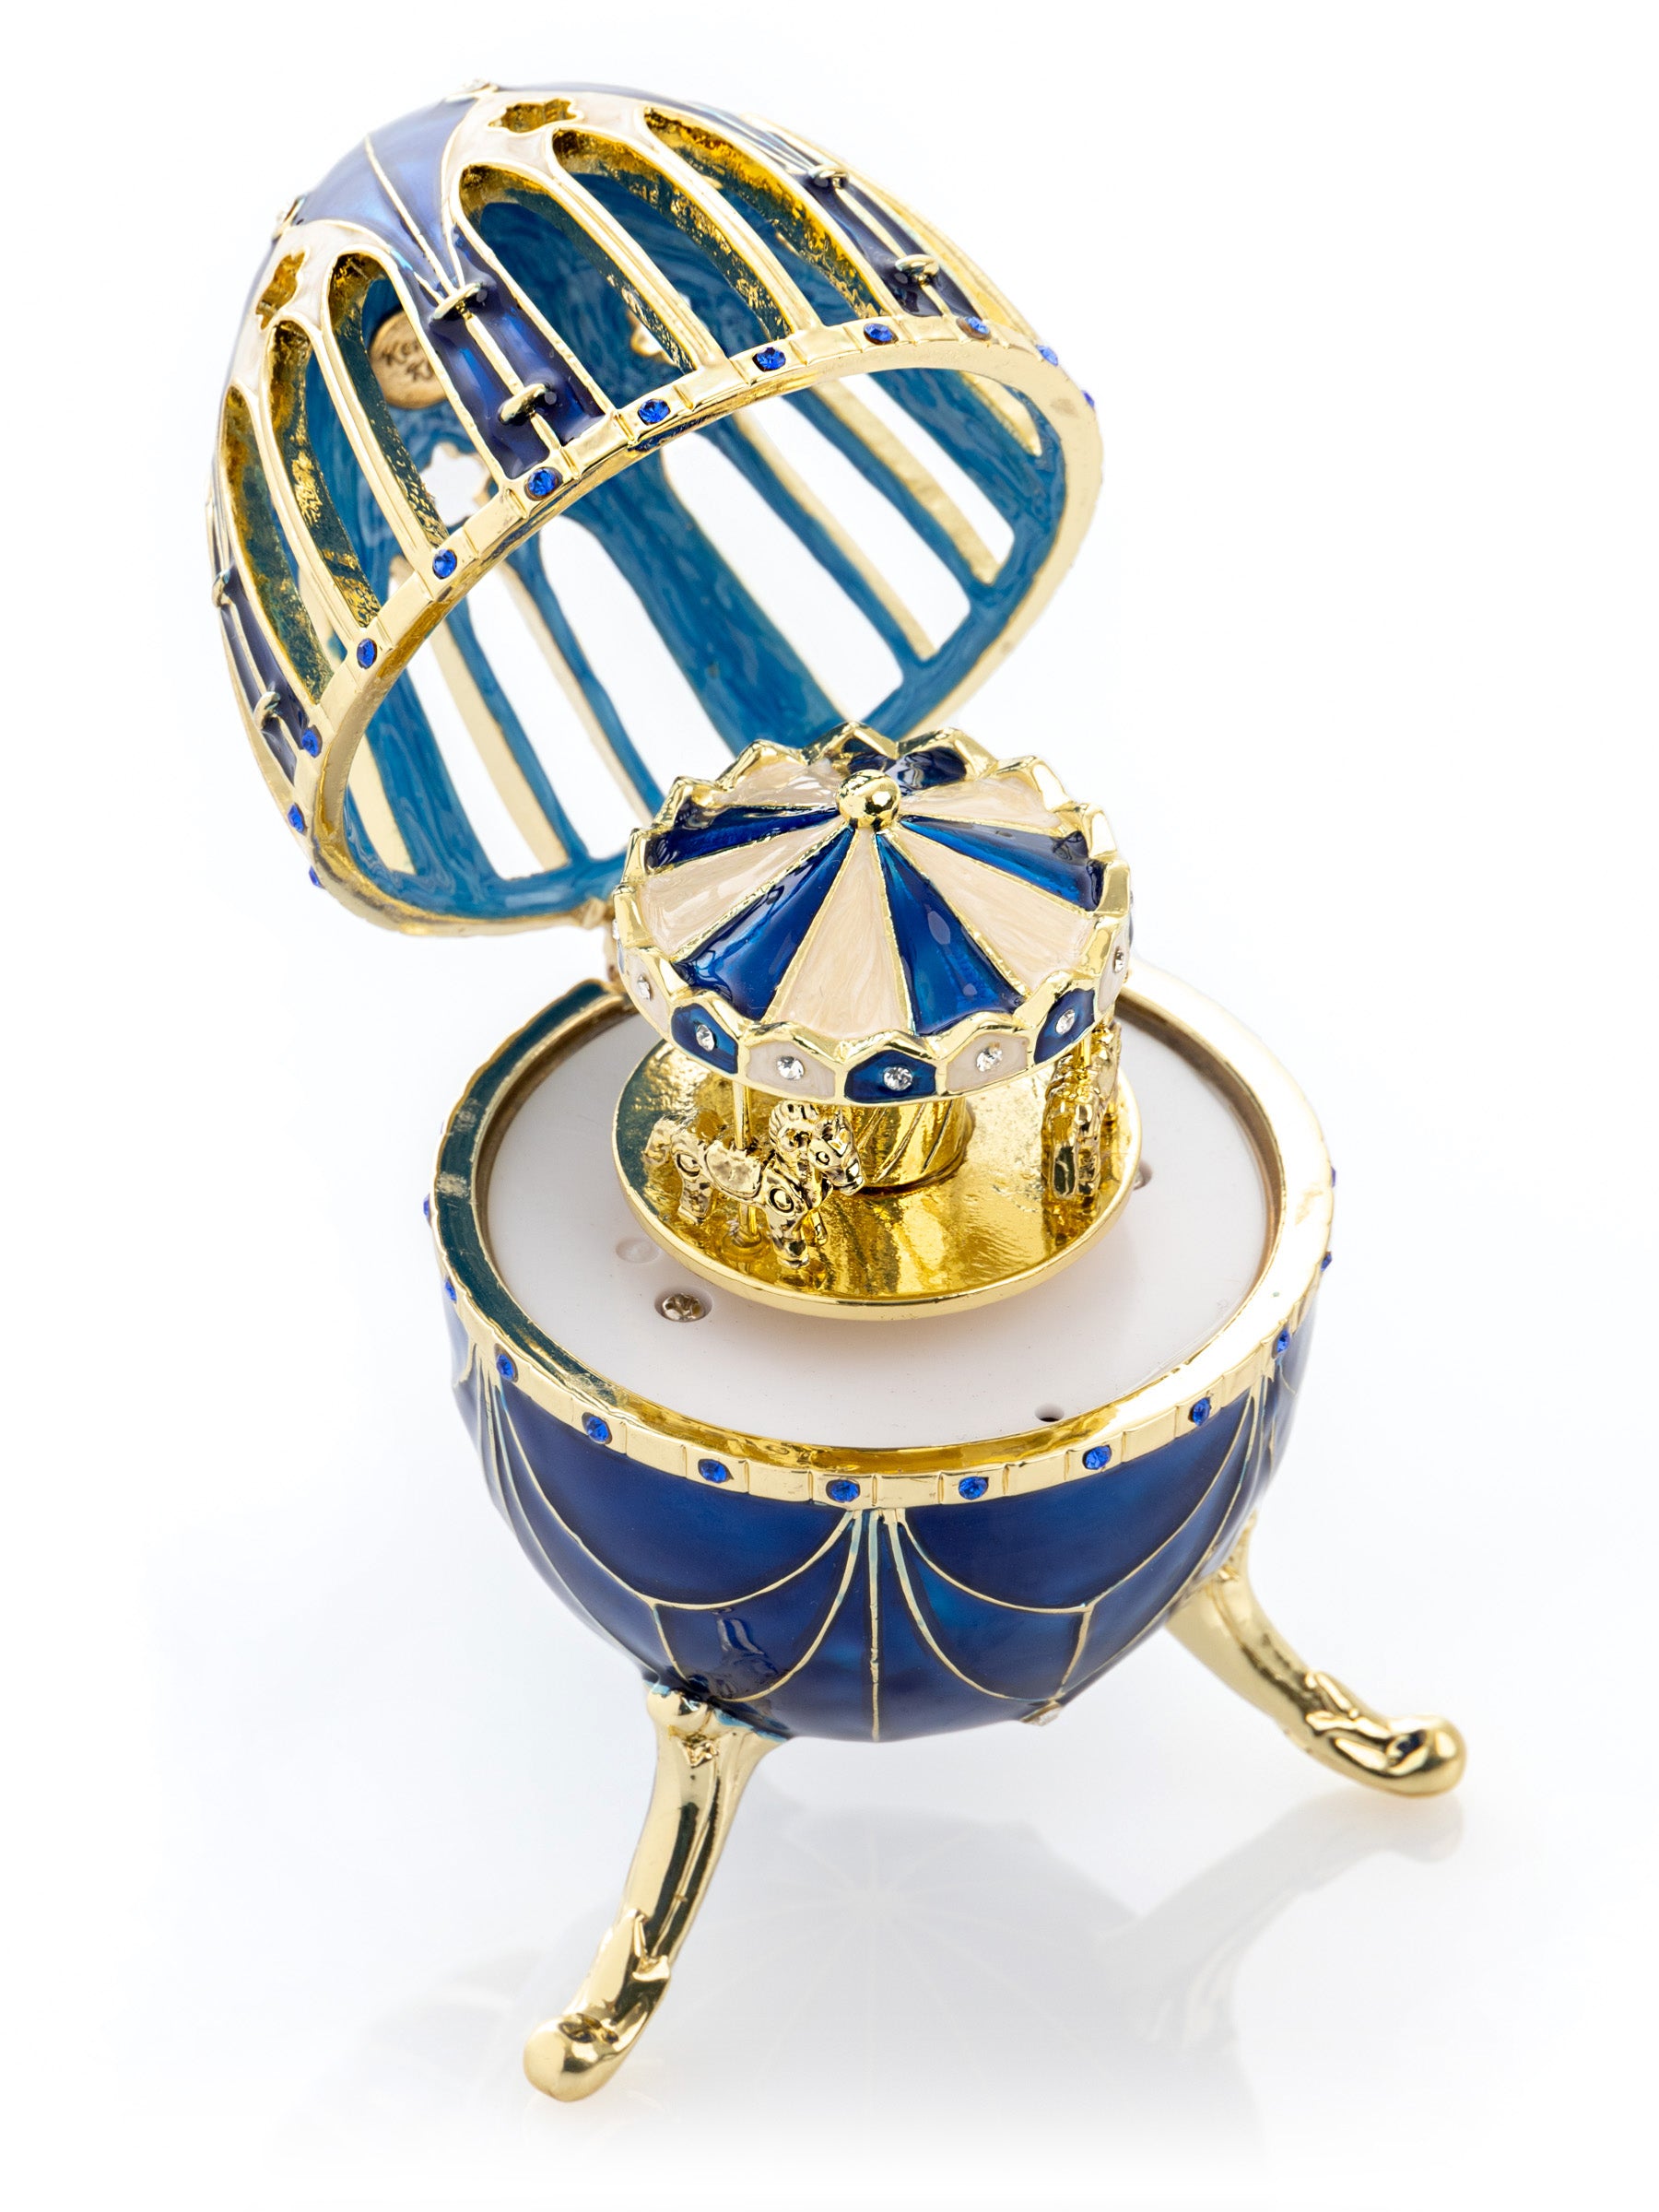 Oeuf Fabergé bleu et or avec surprise de carrousel à chevaux à l'intérieur